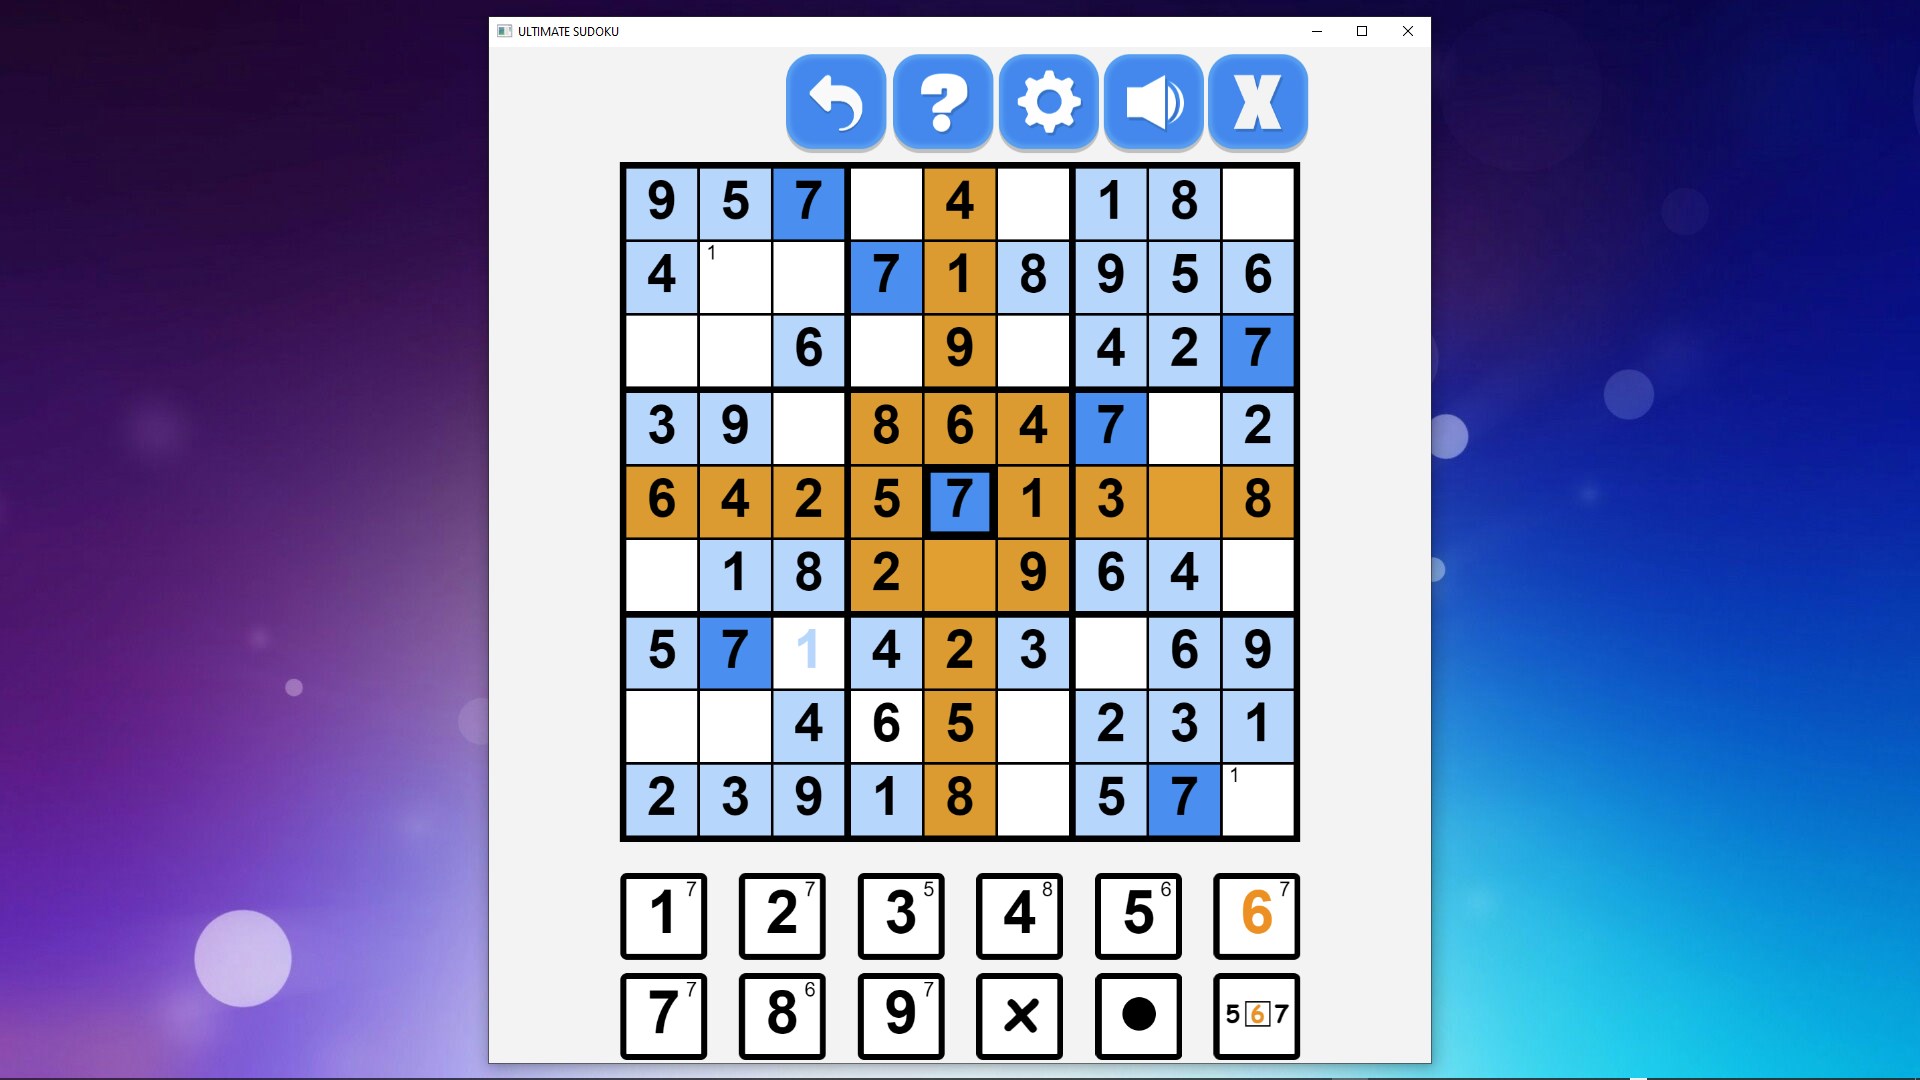 Ultimate Sudoku Game là trò chơi logic tuyệt vời để rèn luyện khả năng suy luận và tập trung. Hãy thử sức với các bảng Sudoku phức tạp để thách thức khả năng tư duy của bạn và trở thành một tay chơi Sudoku \